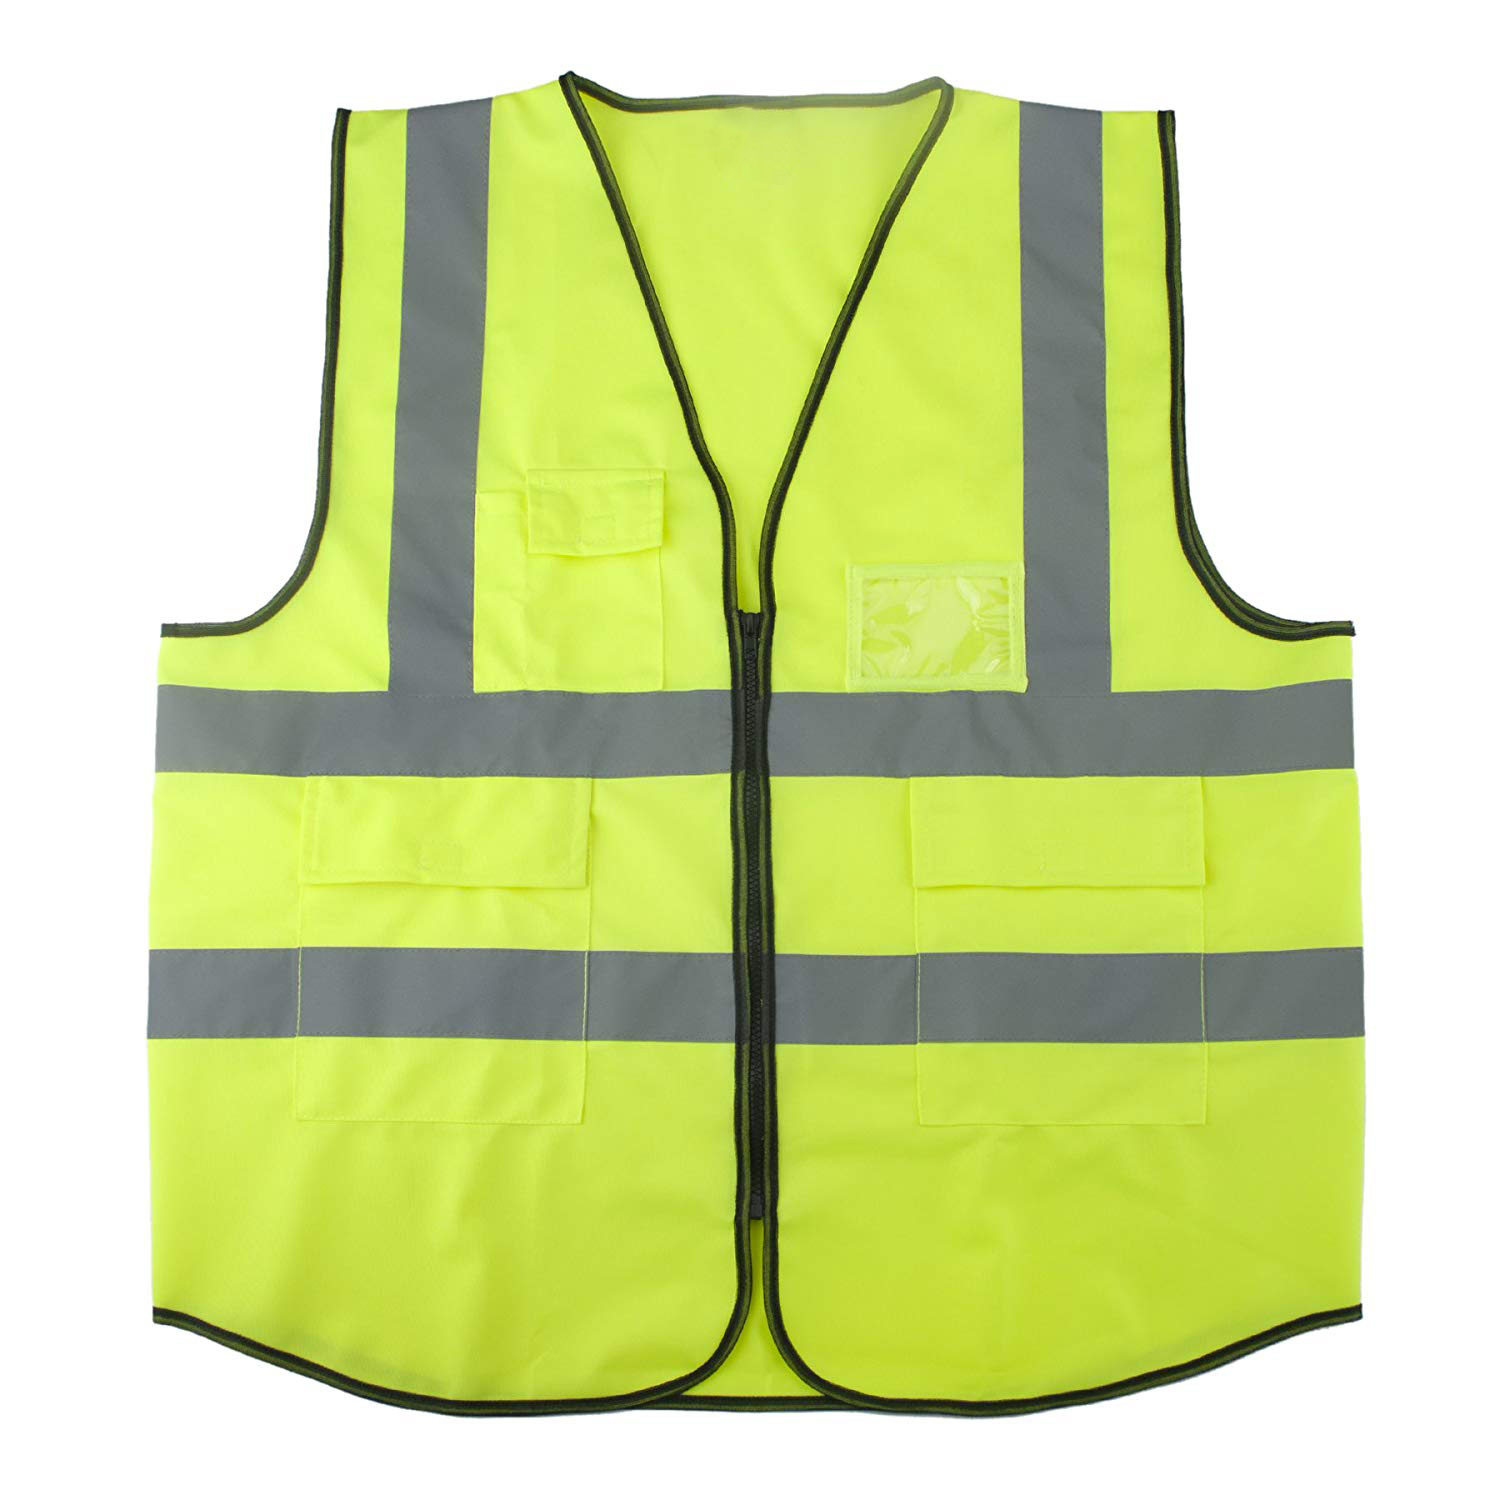 Safety Vest with Reflective Stripe 5 Pocket